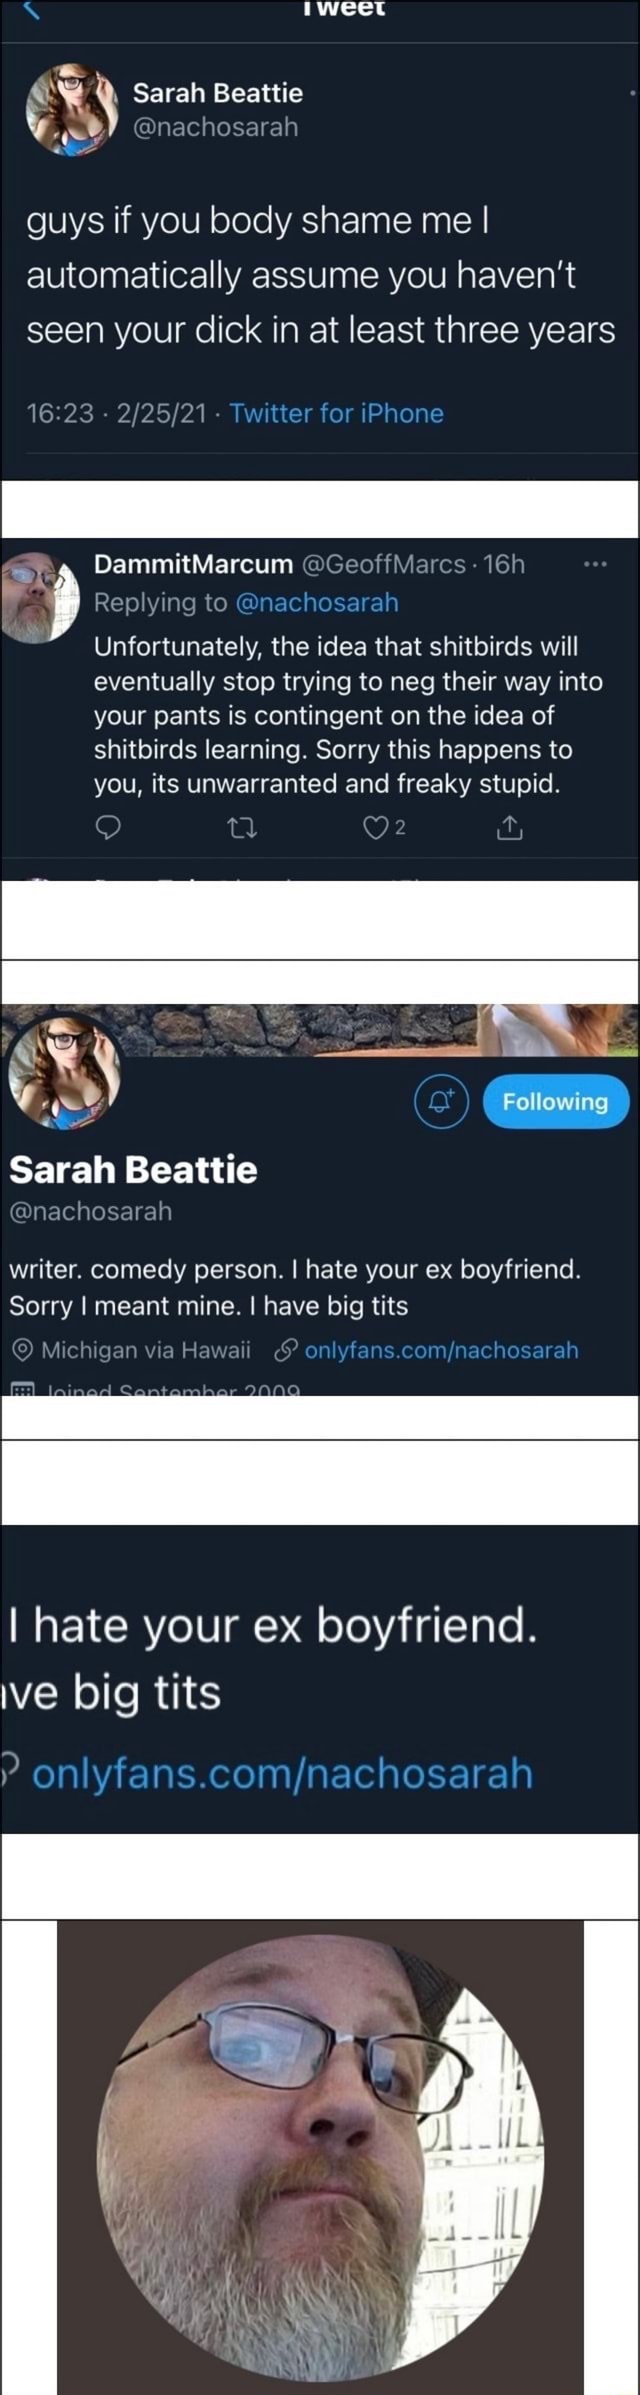 Sarah beattie onlyfans